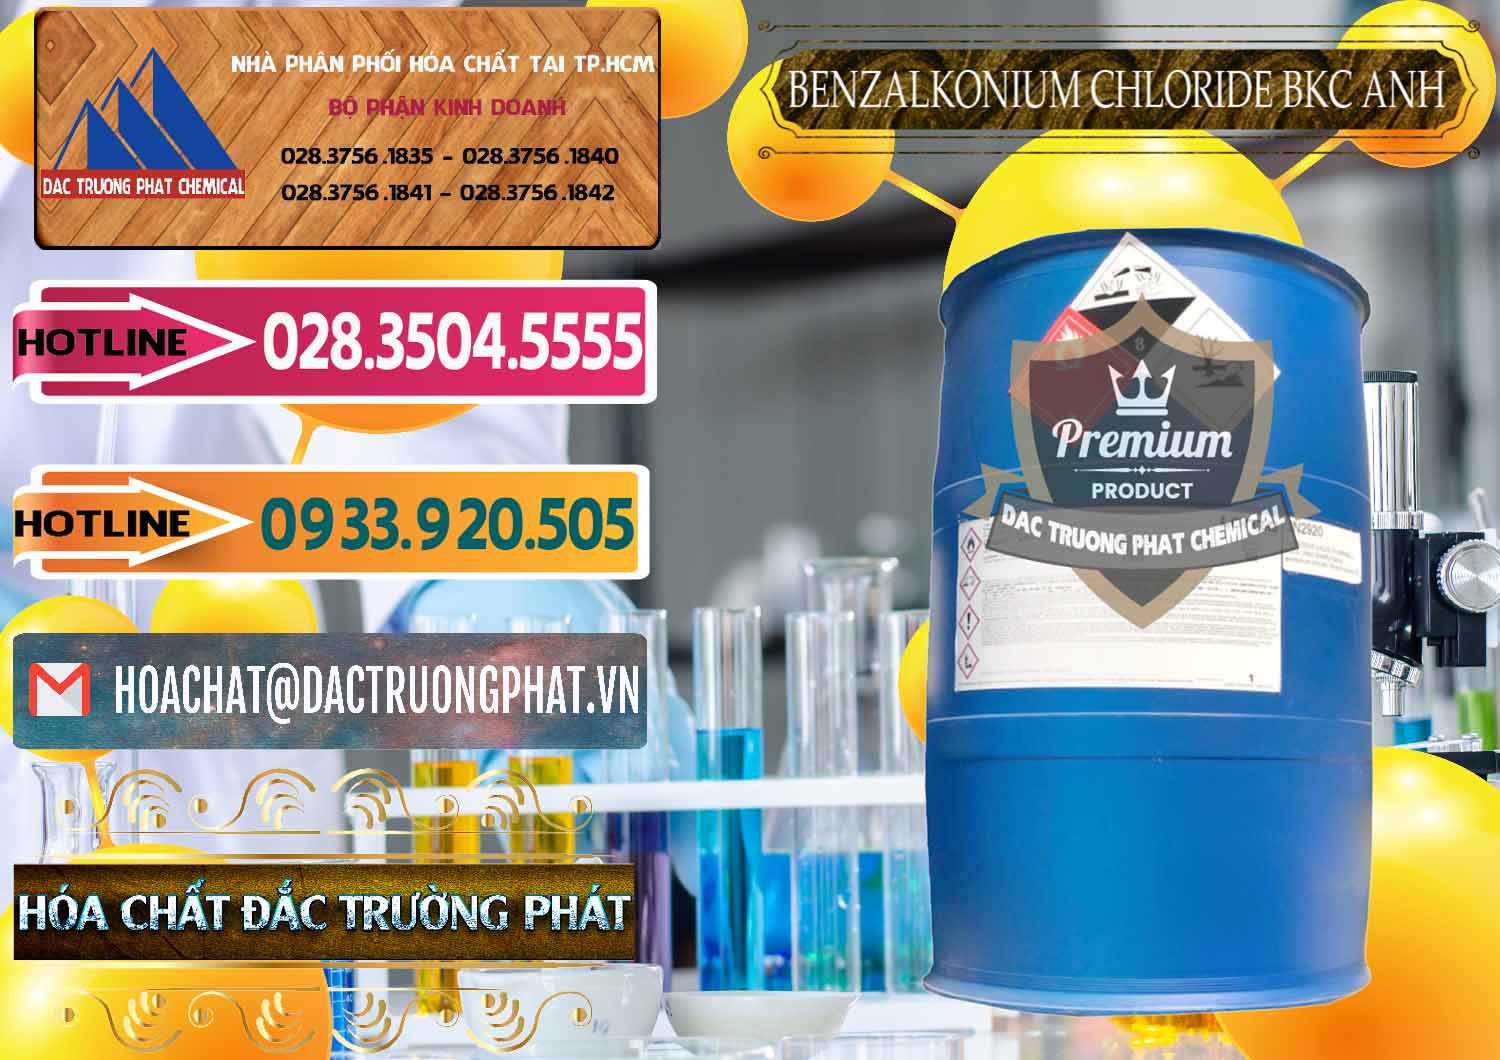 Nơi kinh doanh _ bán BKC - Benzalkonium Chloride 80% Anh Quốc Uk Kingdoms - 0457 - Đơn vị chuyên cung ứng và phân phối hóa chất tại TP.HCM - dactruongphat.vn